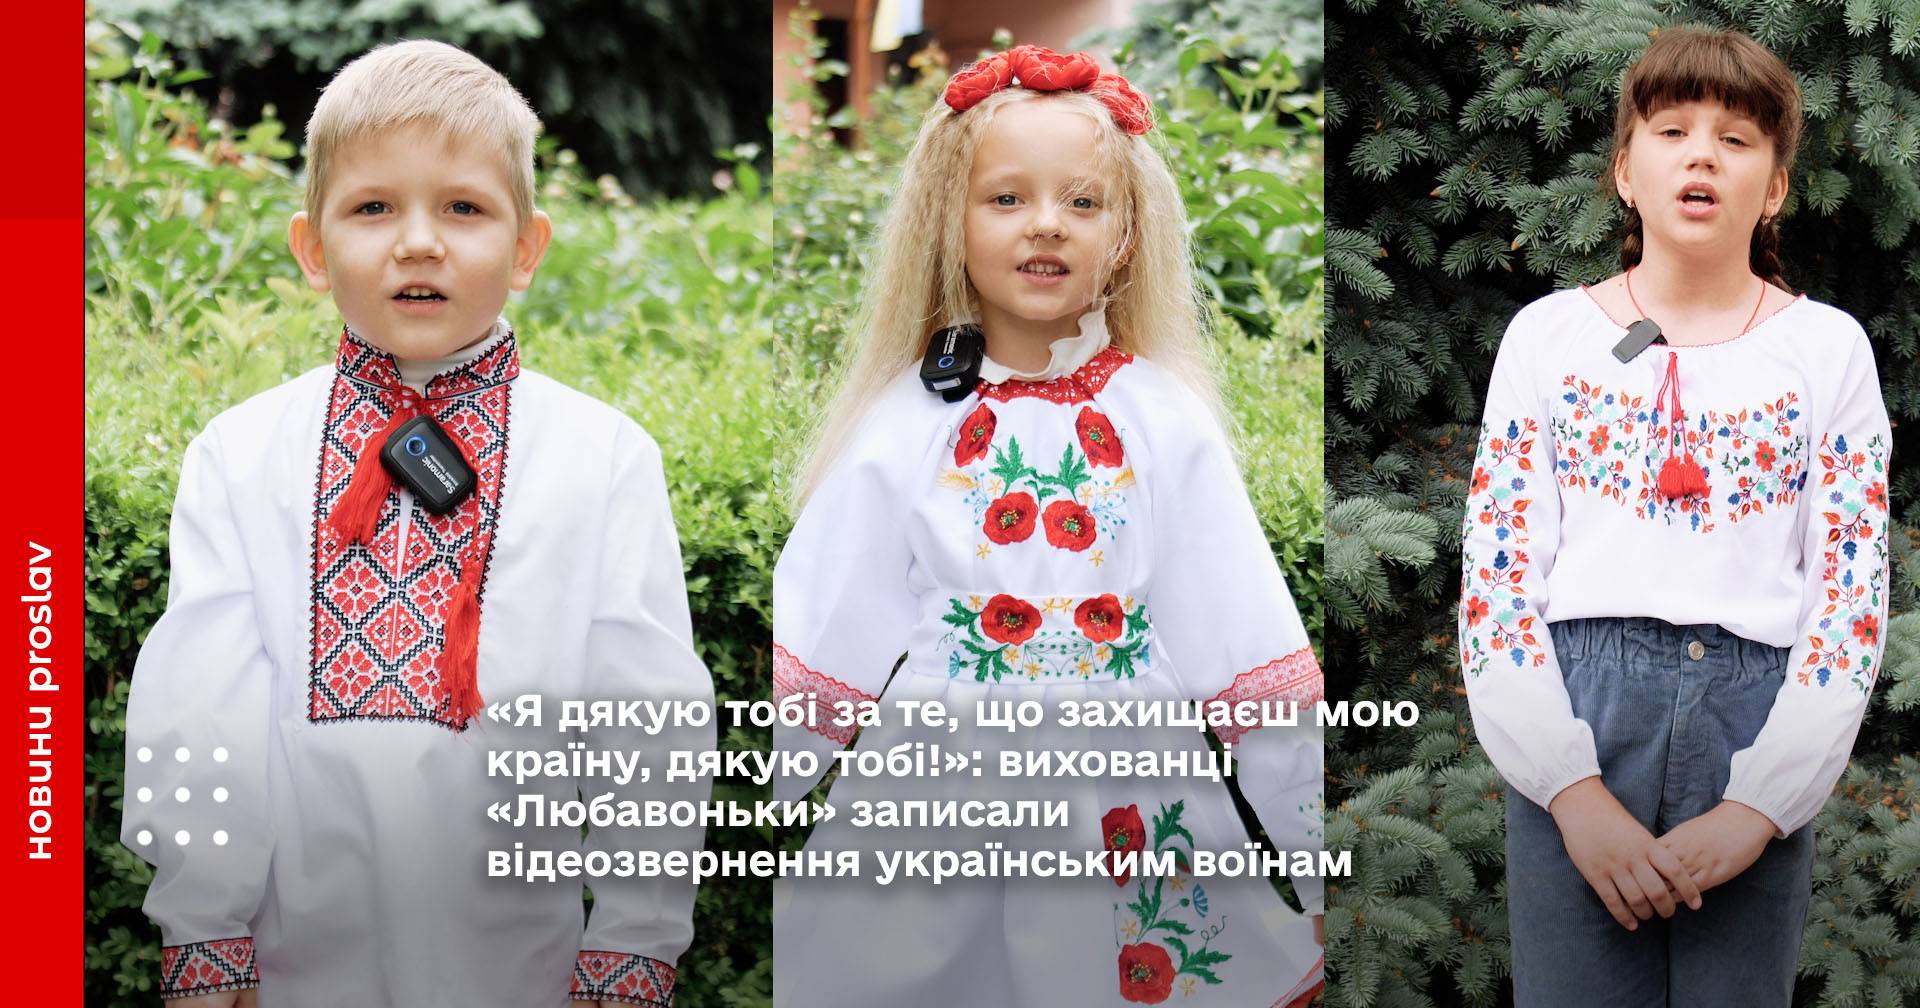 «Я дякую тобі за те, що захищаєш мою країну, дякую тобі!»: вихованці «Любавоньки» записали відеозвернення українським воїнам